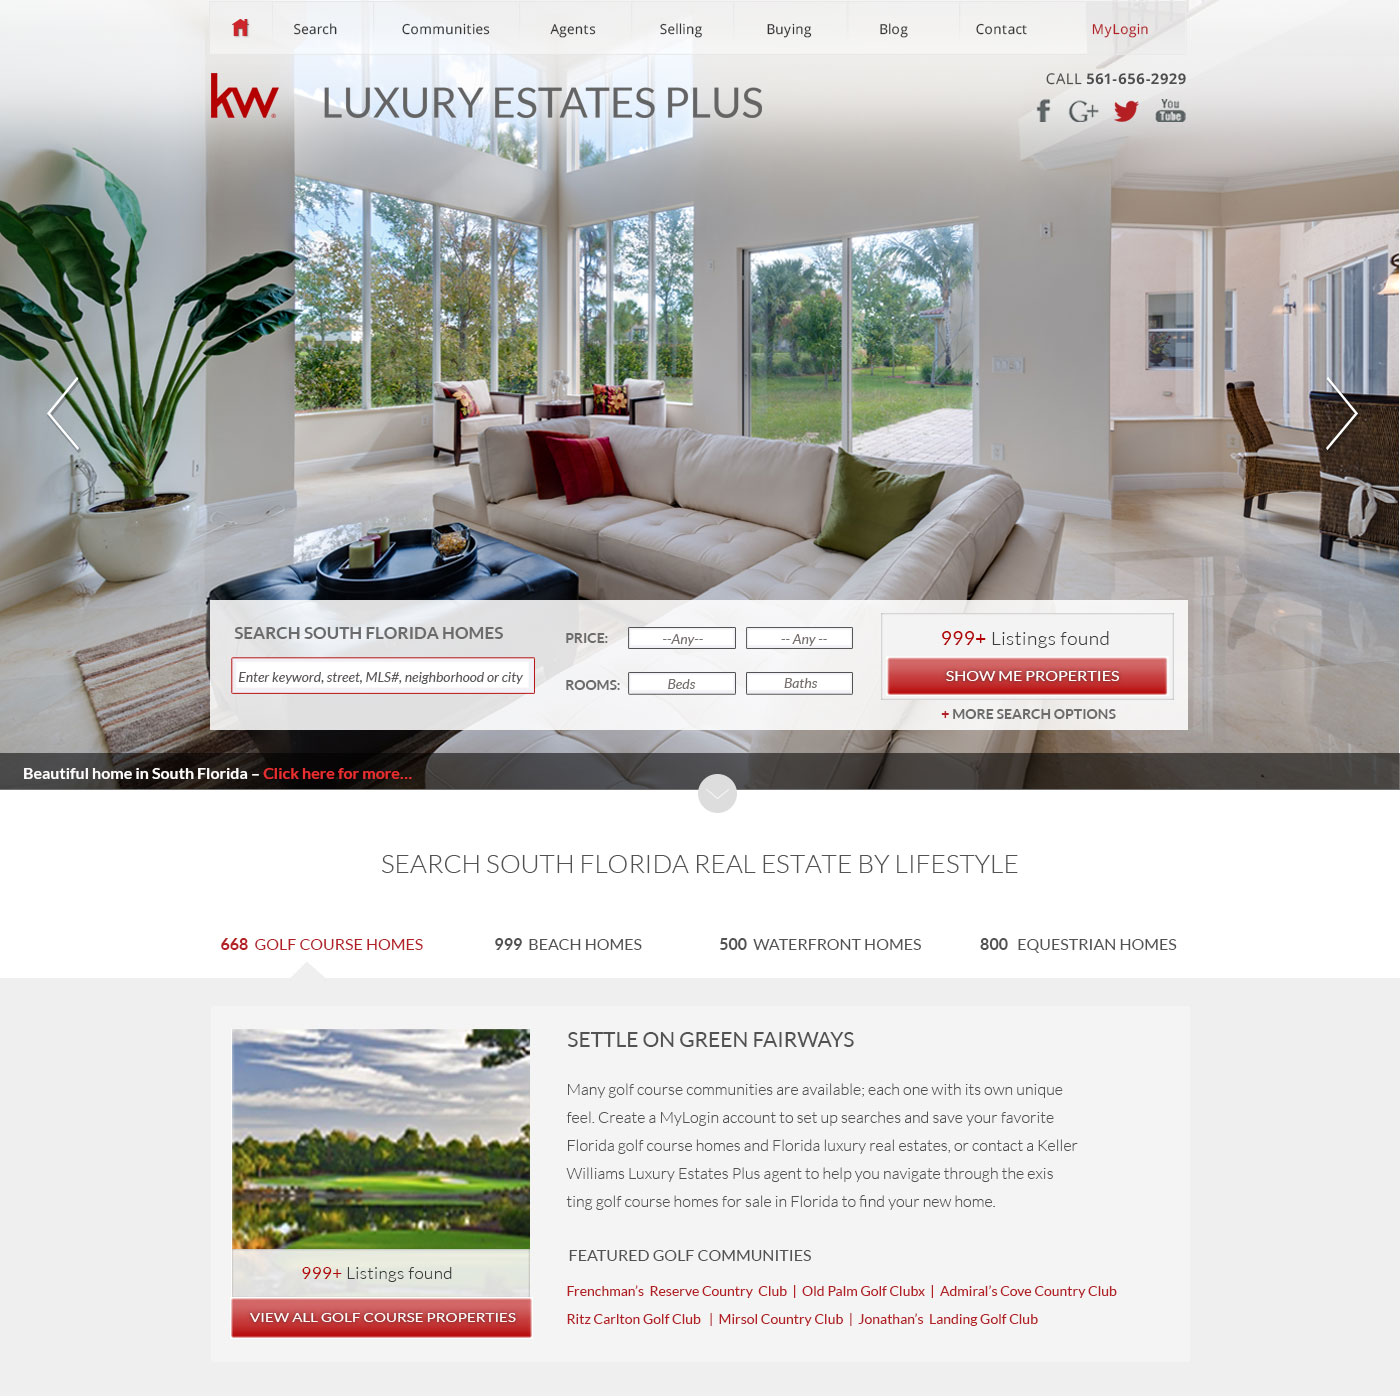 KW: Luxury Estates Plus